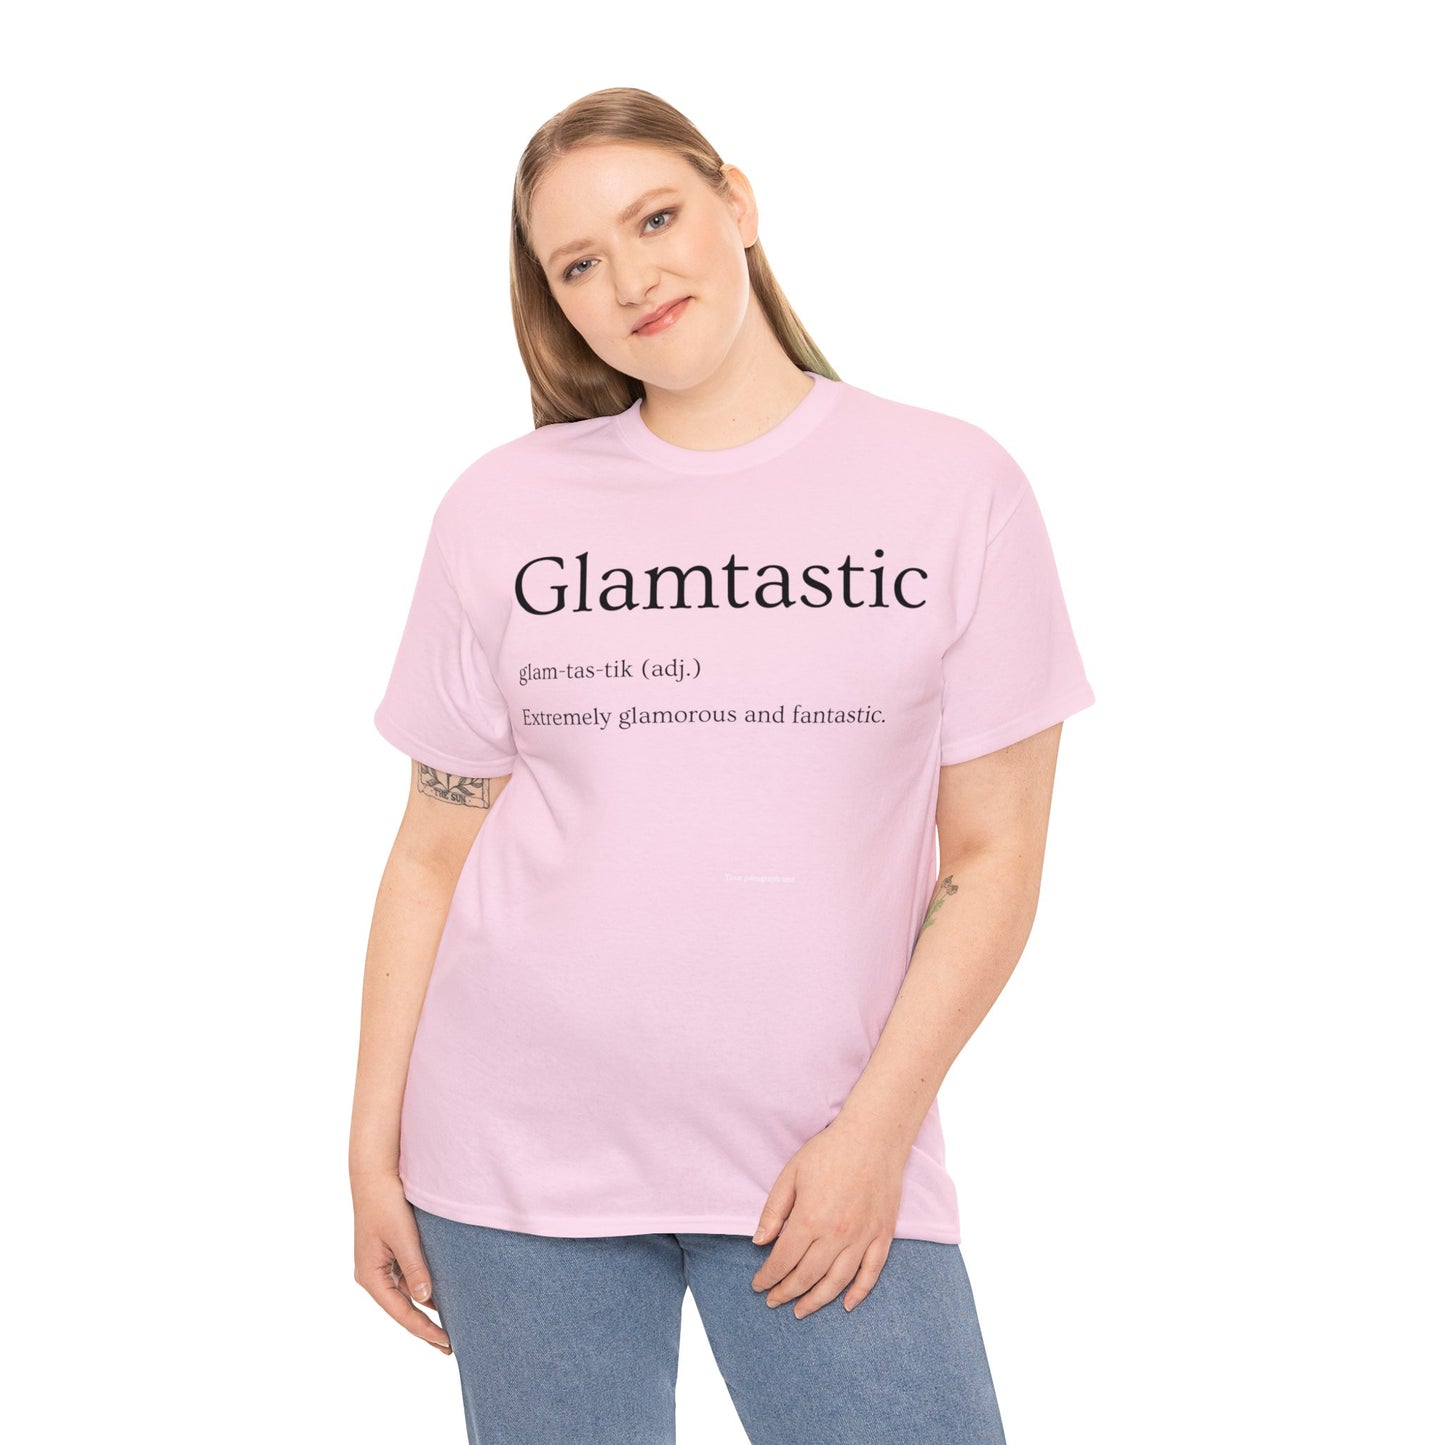 Glamtastic Tee